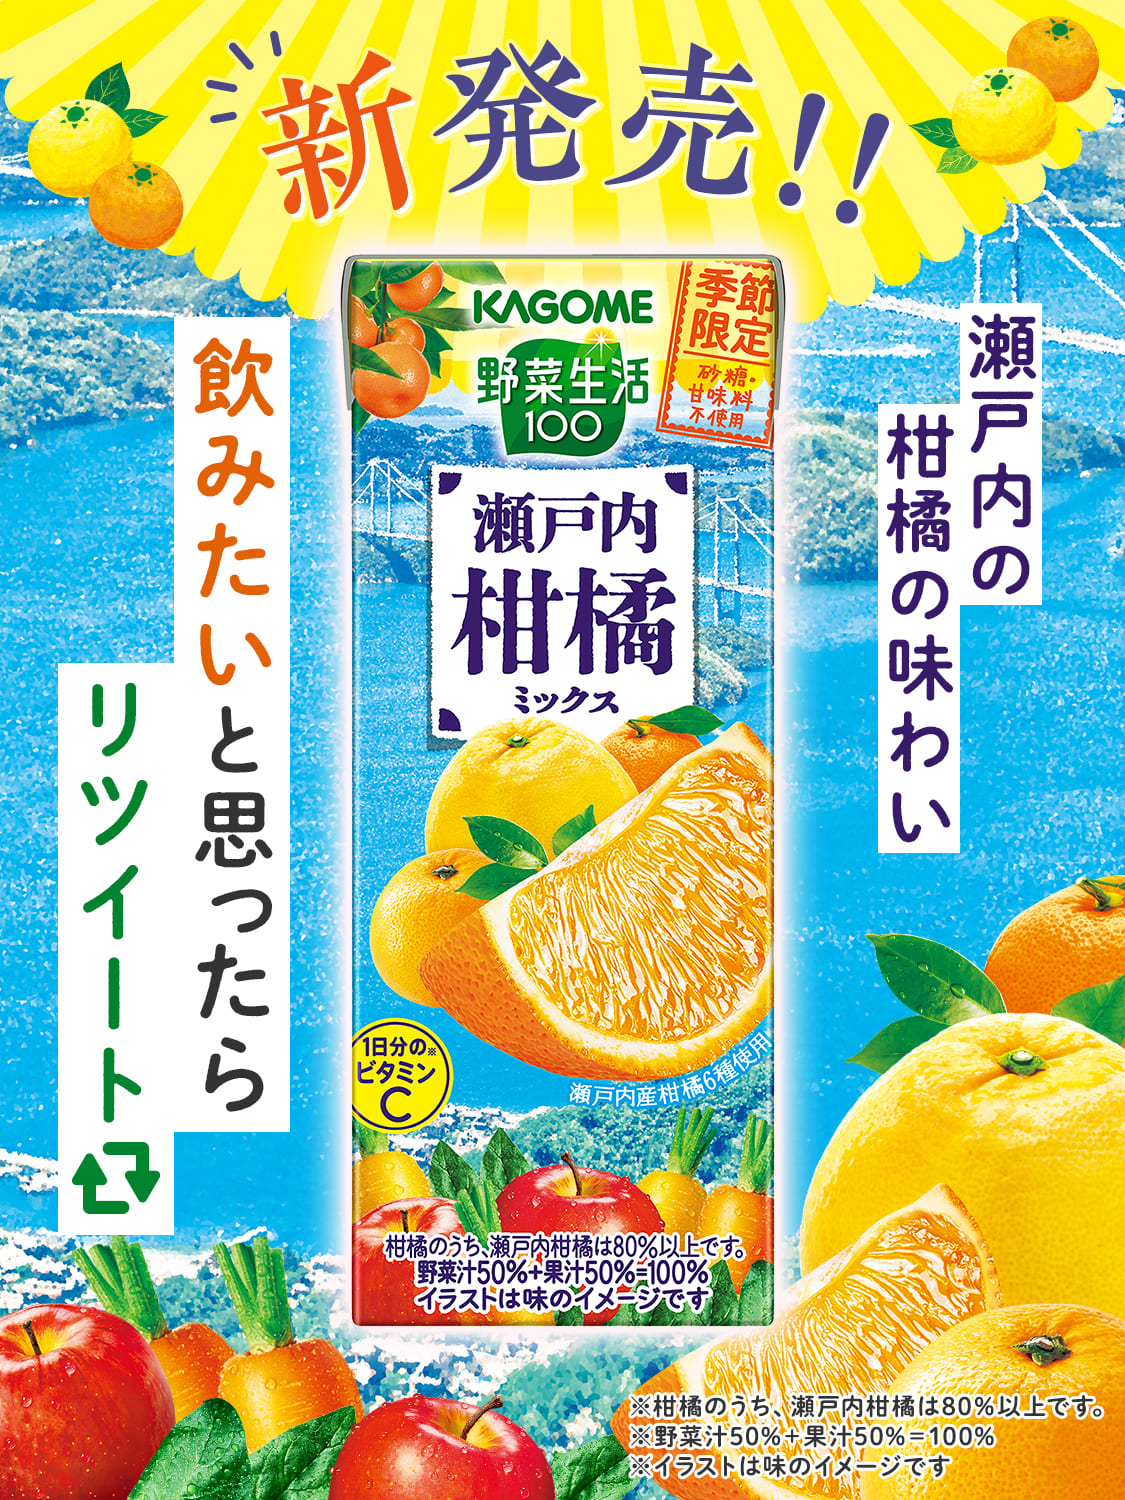 新発売!! 瀬戸内の柑橘の味わい_カゴメ